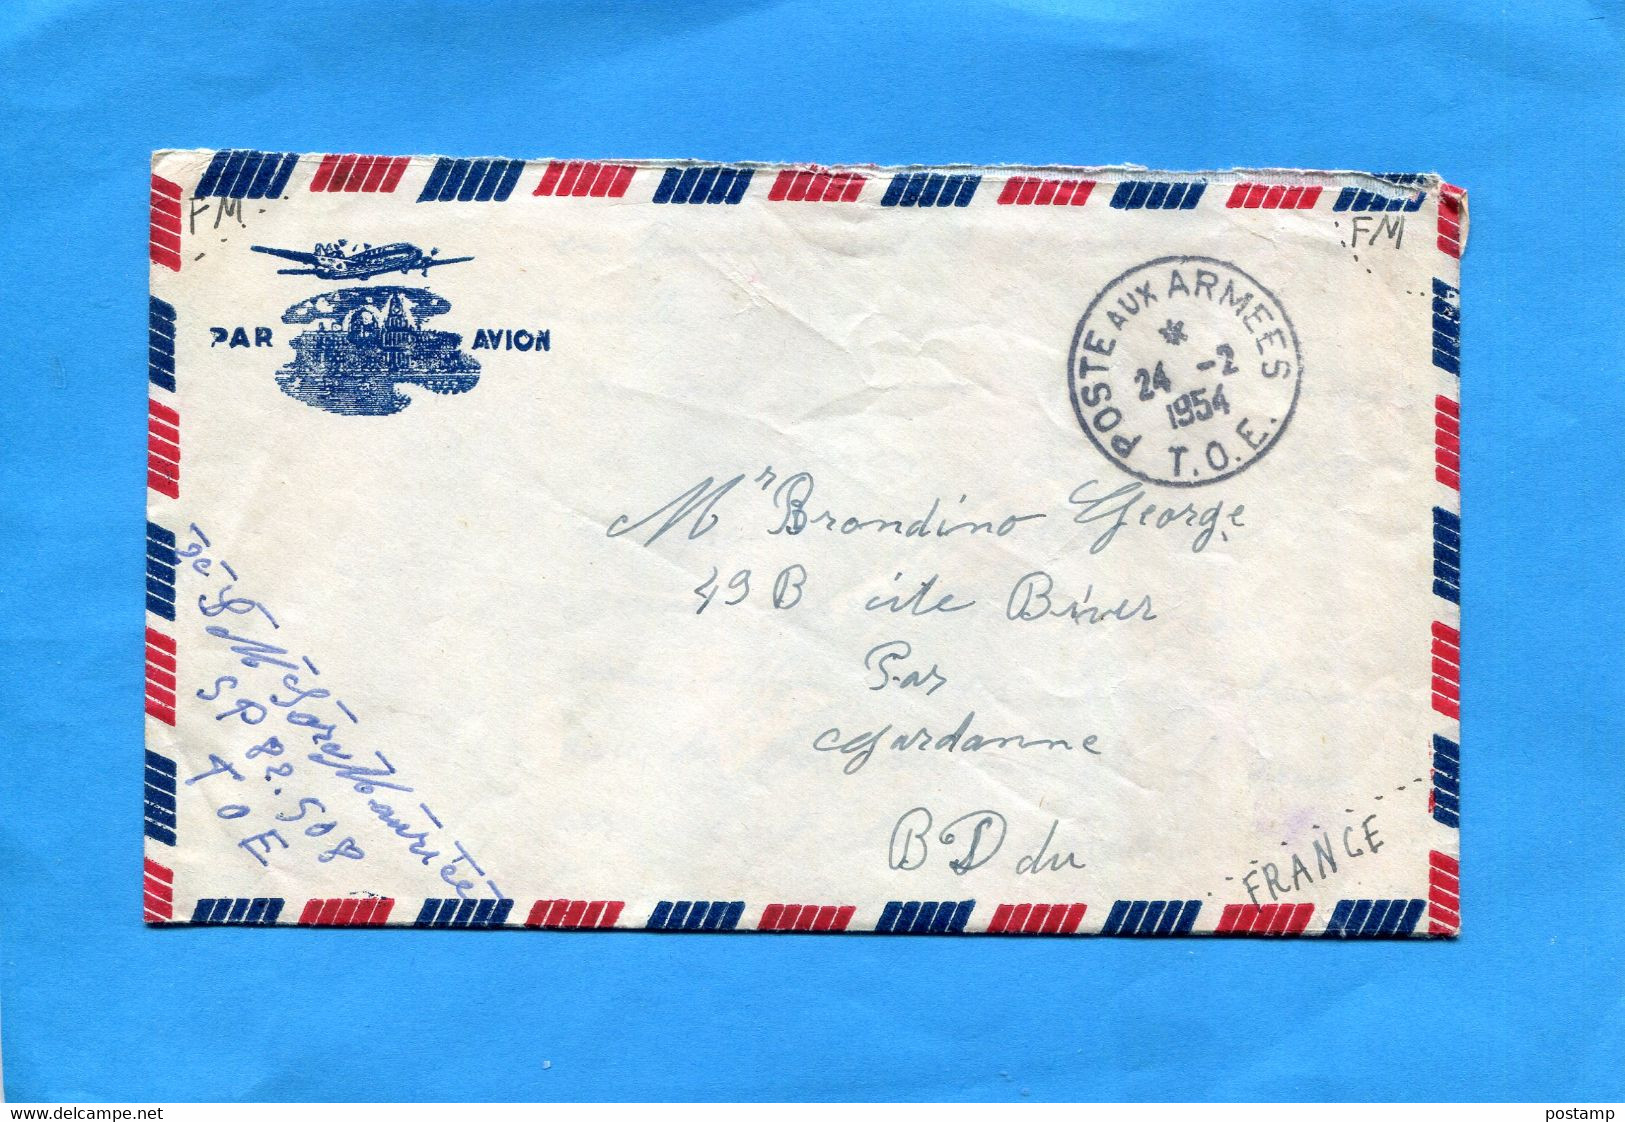 MARCOPHILIE Guerre D'indochine-lettre Cad Poste Aux Armées1954 T O E-expédiée Par SP82508 - Vietnamkrieg/Indochinakrieg